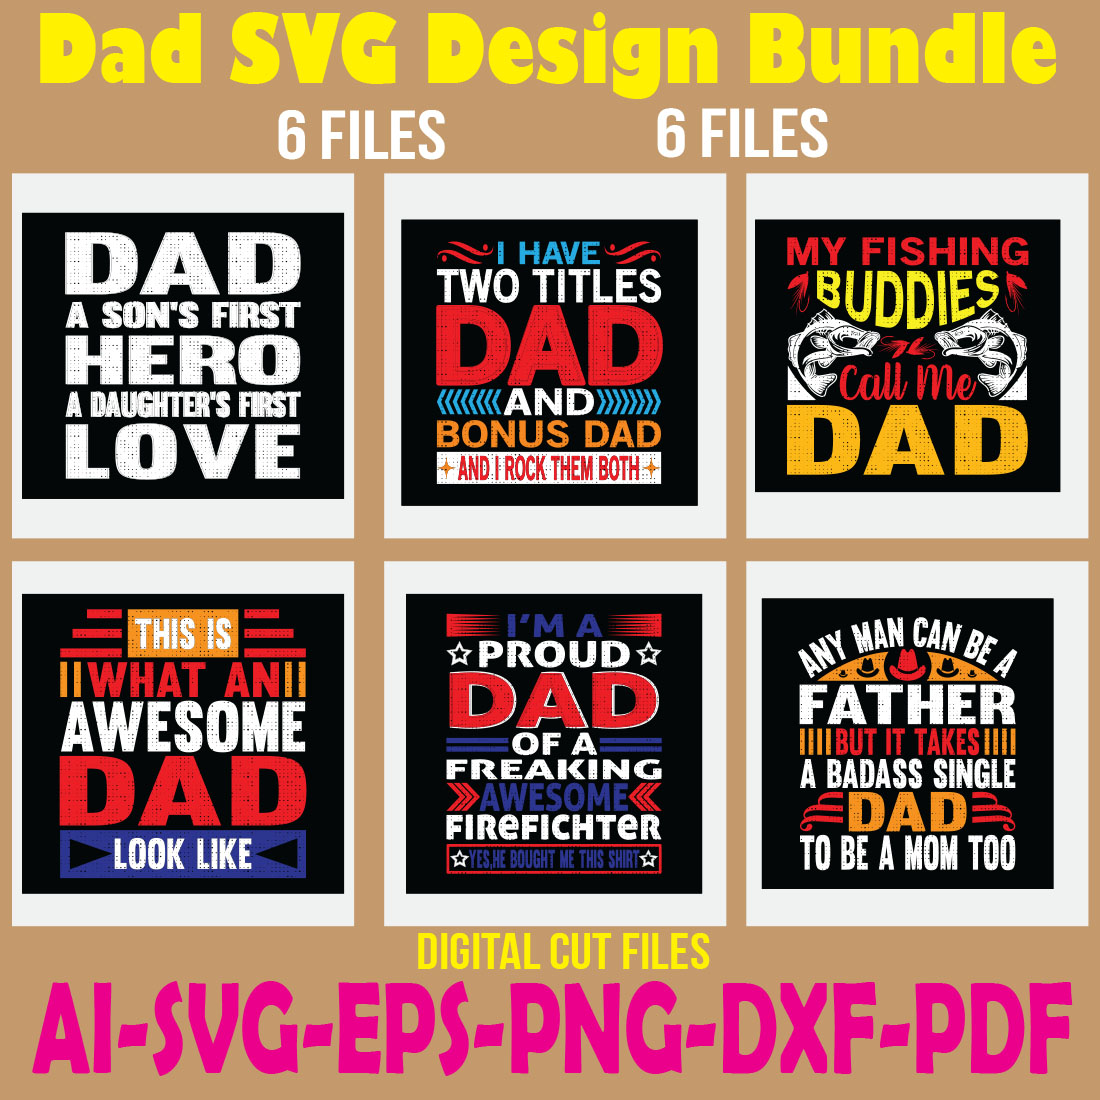 Dad SVG Design Bundle cover image.